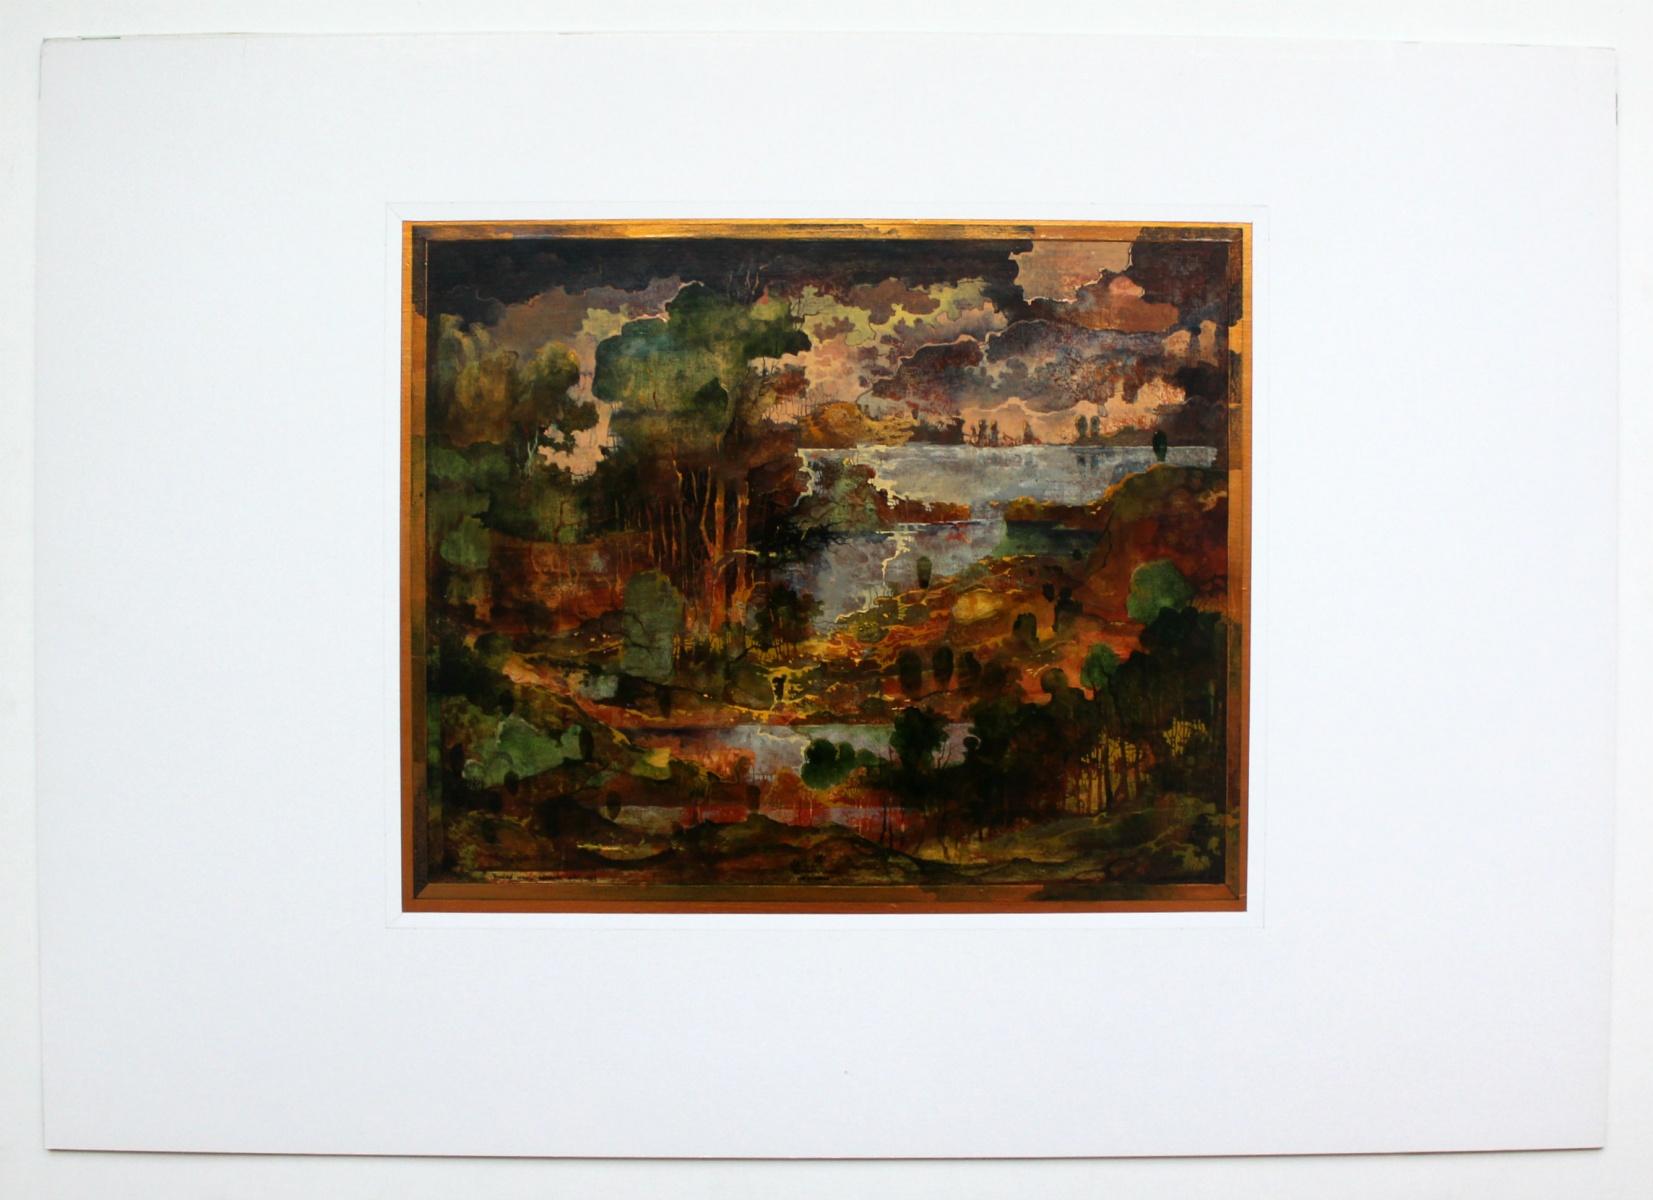 Nocturn - XXI Jahrhundert, Mischtechnik-Landschaftsdruck, gedämpfte Farben, warme Töne (Braun), Landscape Print, von Krzysztof Wieczorek